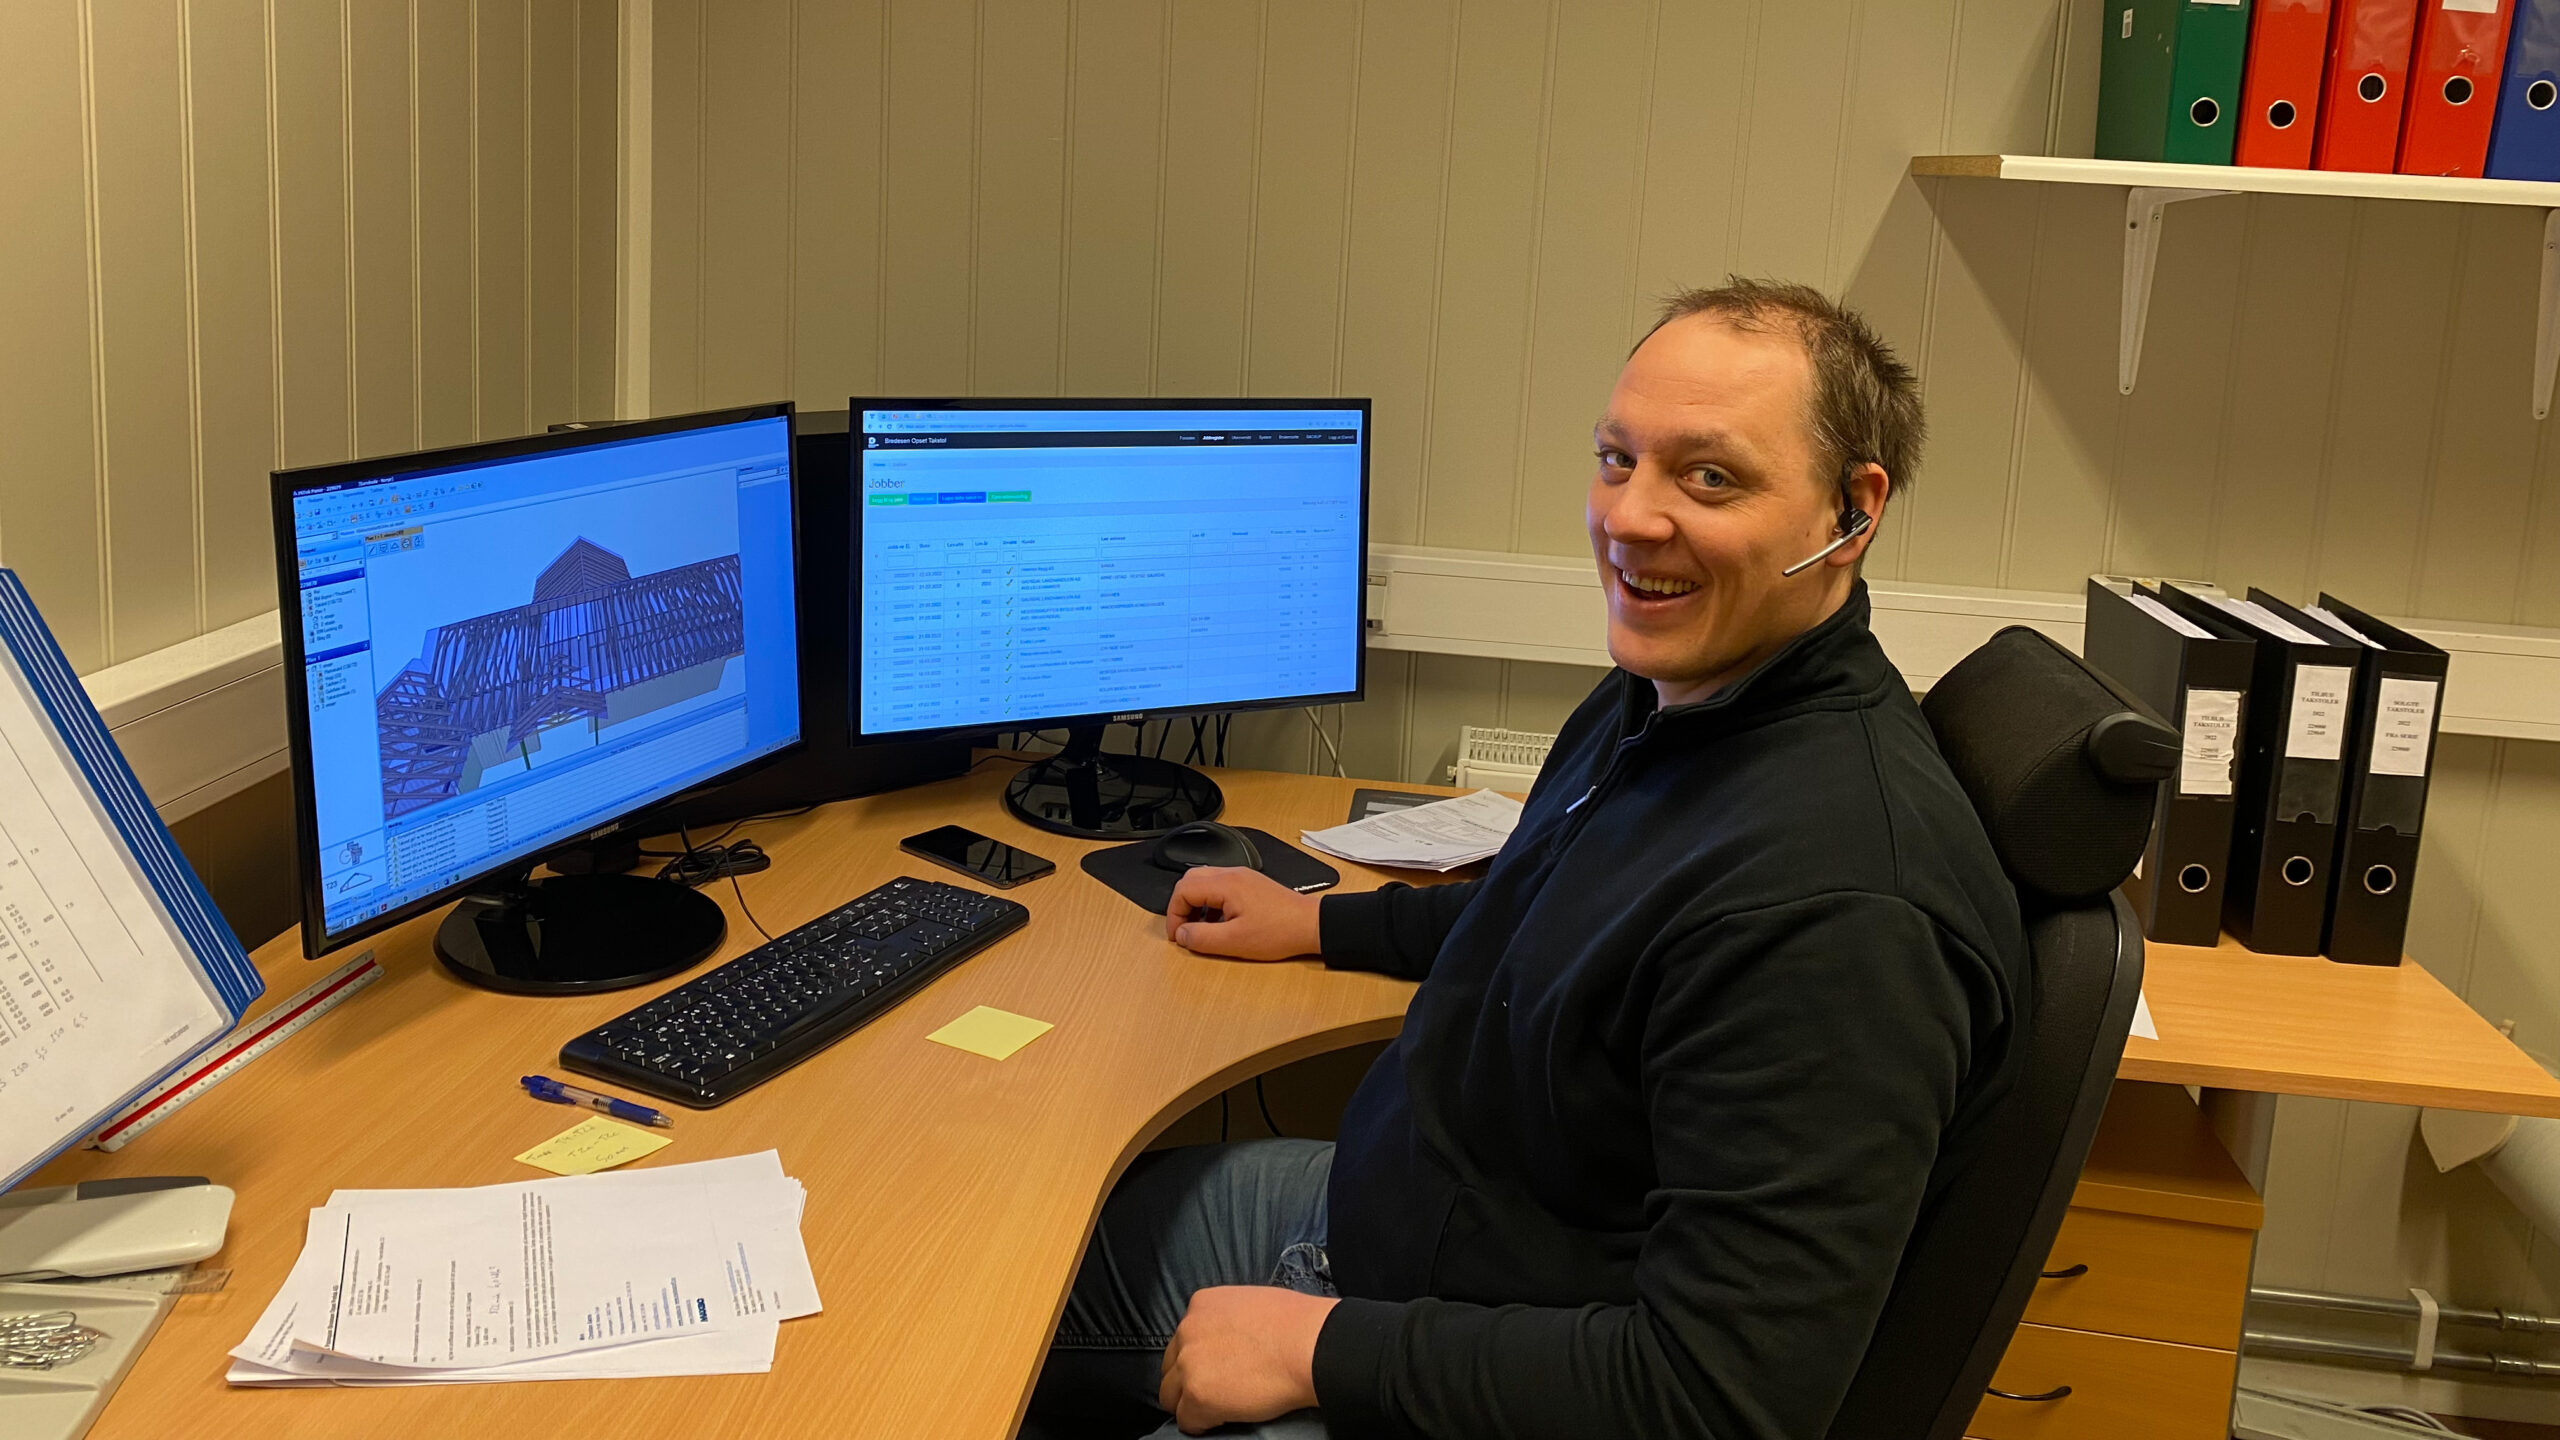 bildet viser en mann som sitter foran to dataskjermer på kontoret og smiler